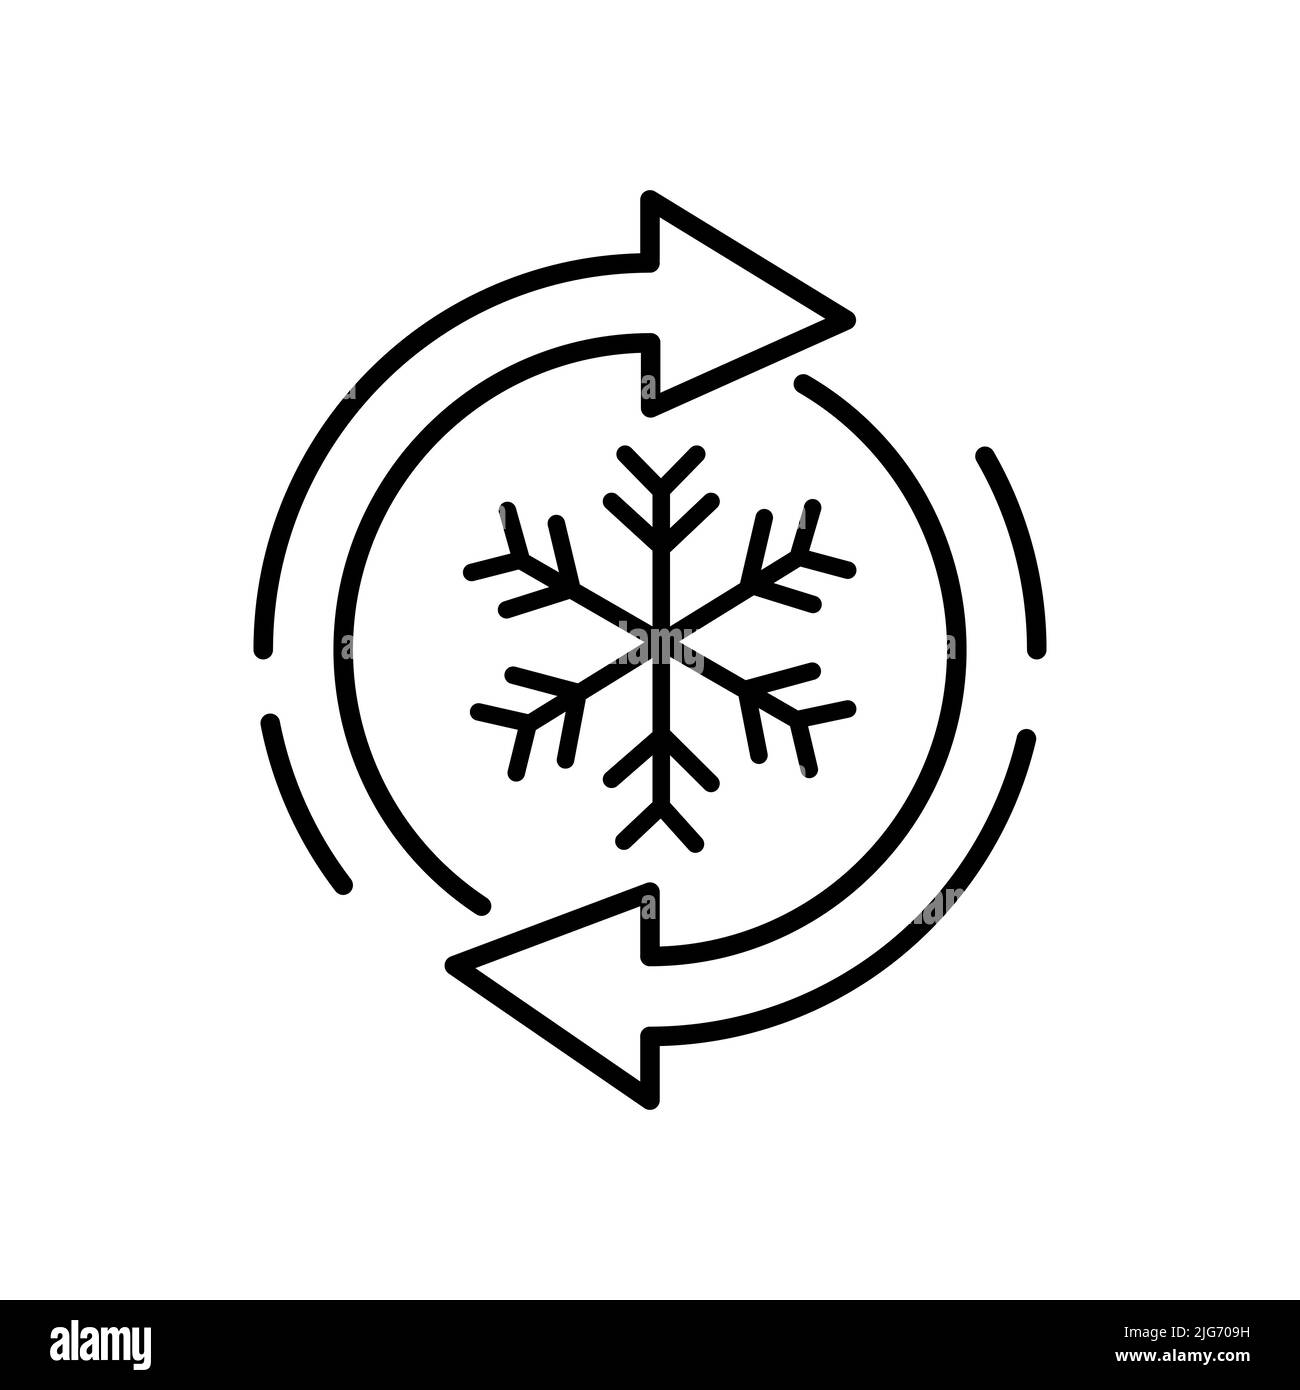 Auftauschild, Gefrierwasser Auftauen Schneeflocke und Kreis isoliert Umrisssymbol. Vektor kein Frostzeichen, Kühlschranksymbol. Auftauen, Ref Stock Vektor